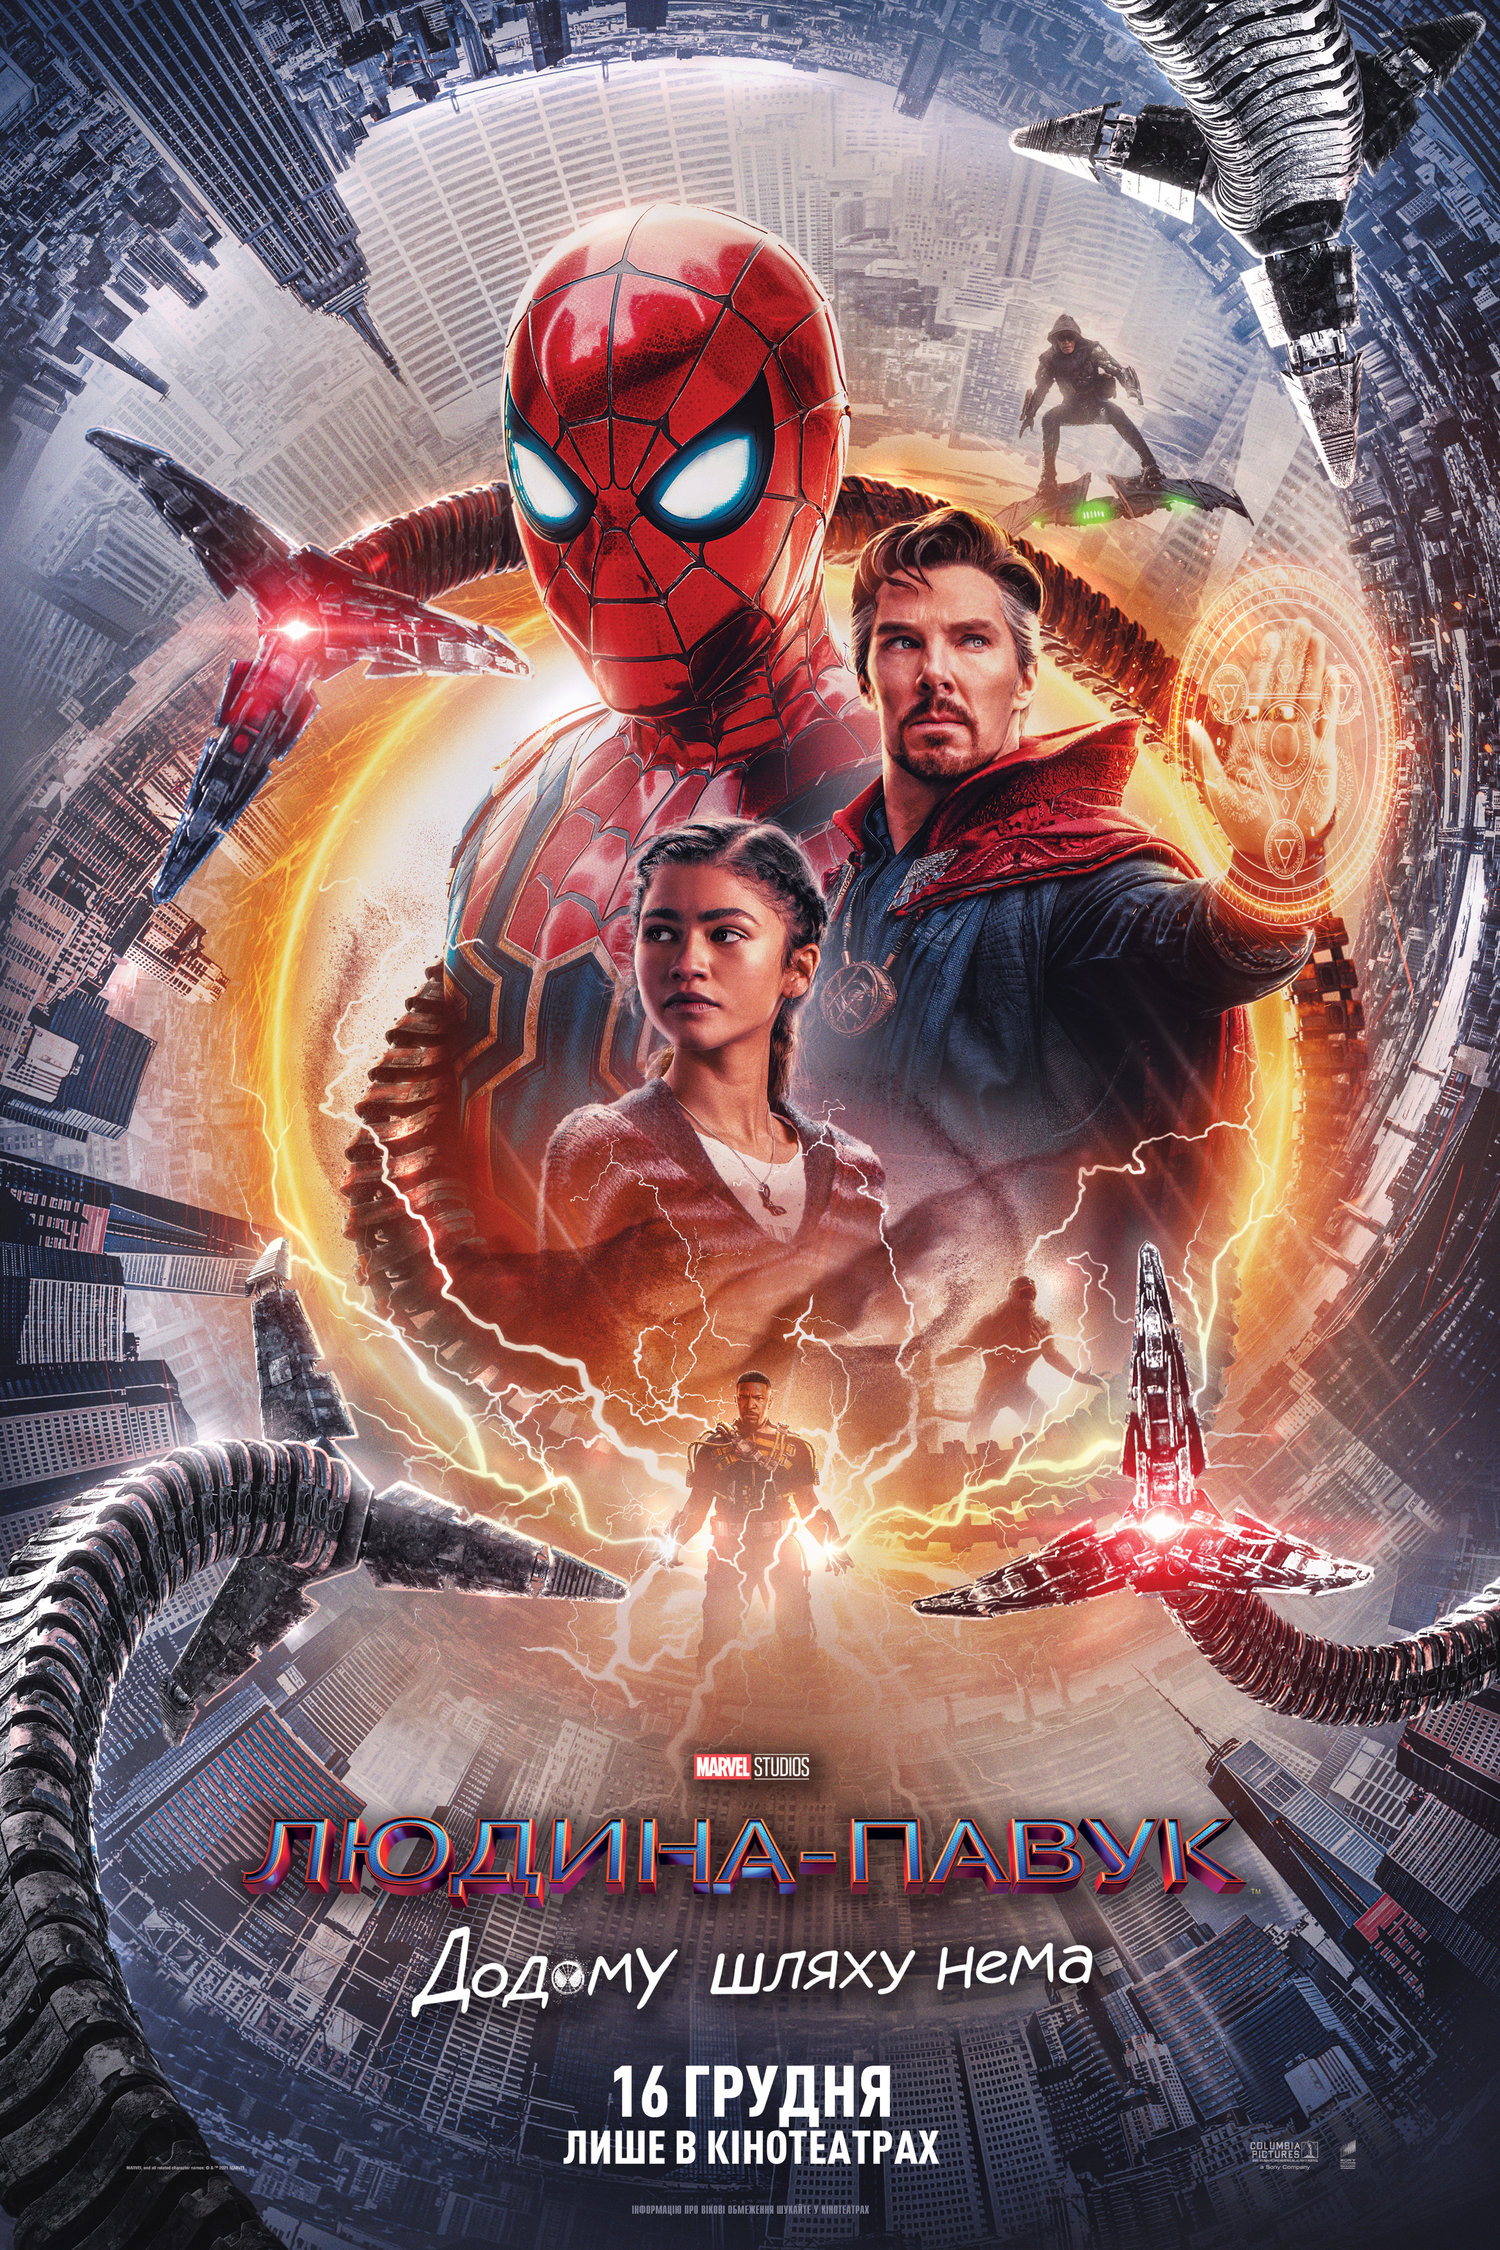 Людина-павук: Додому шляху нема / Spider-Man: No Way Home (2021) HDTS 1080p Ukr/Eng | Sub Eng